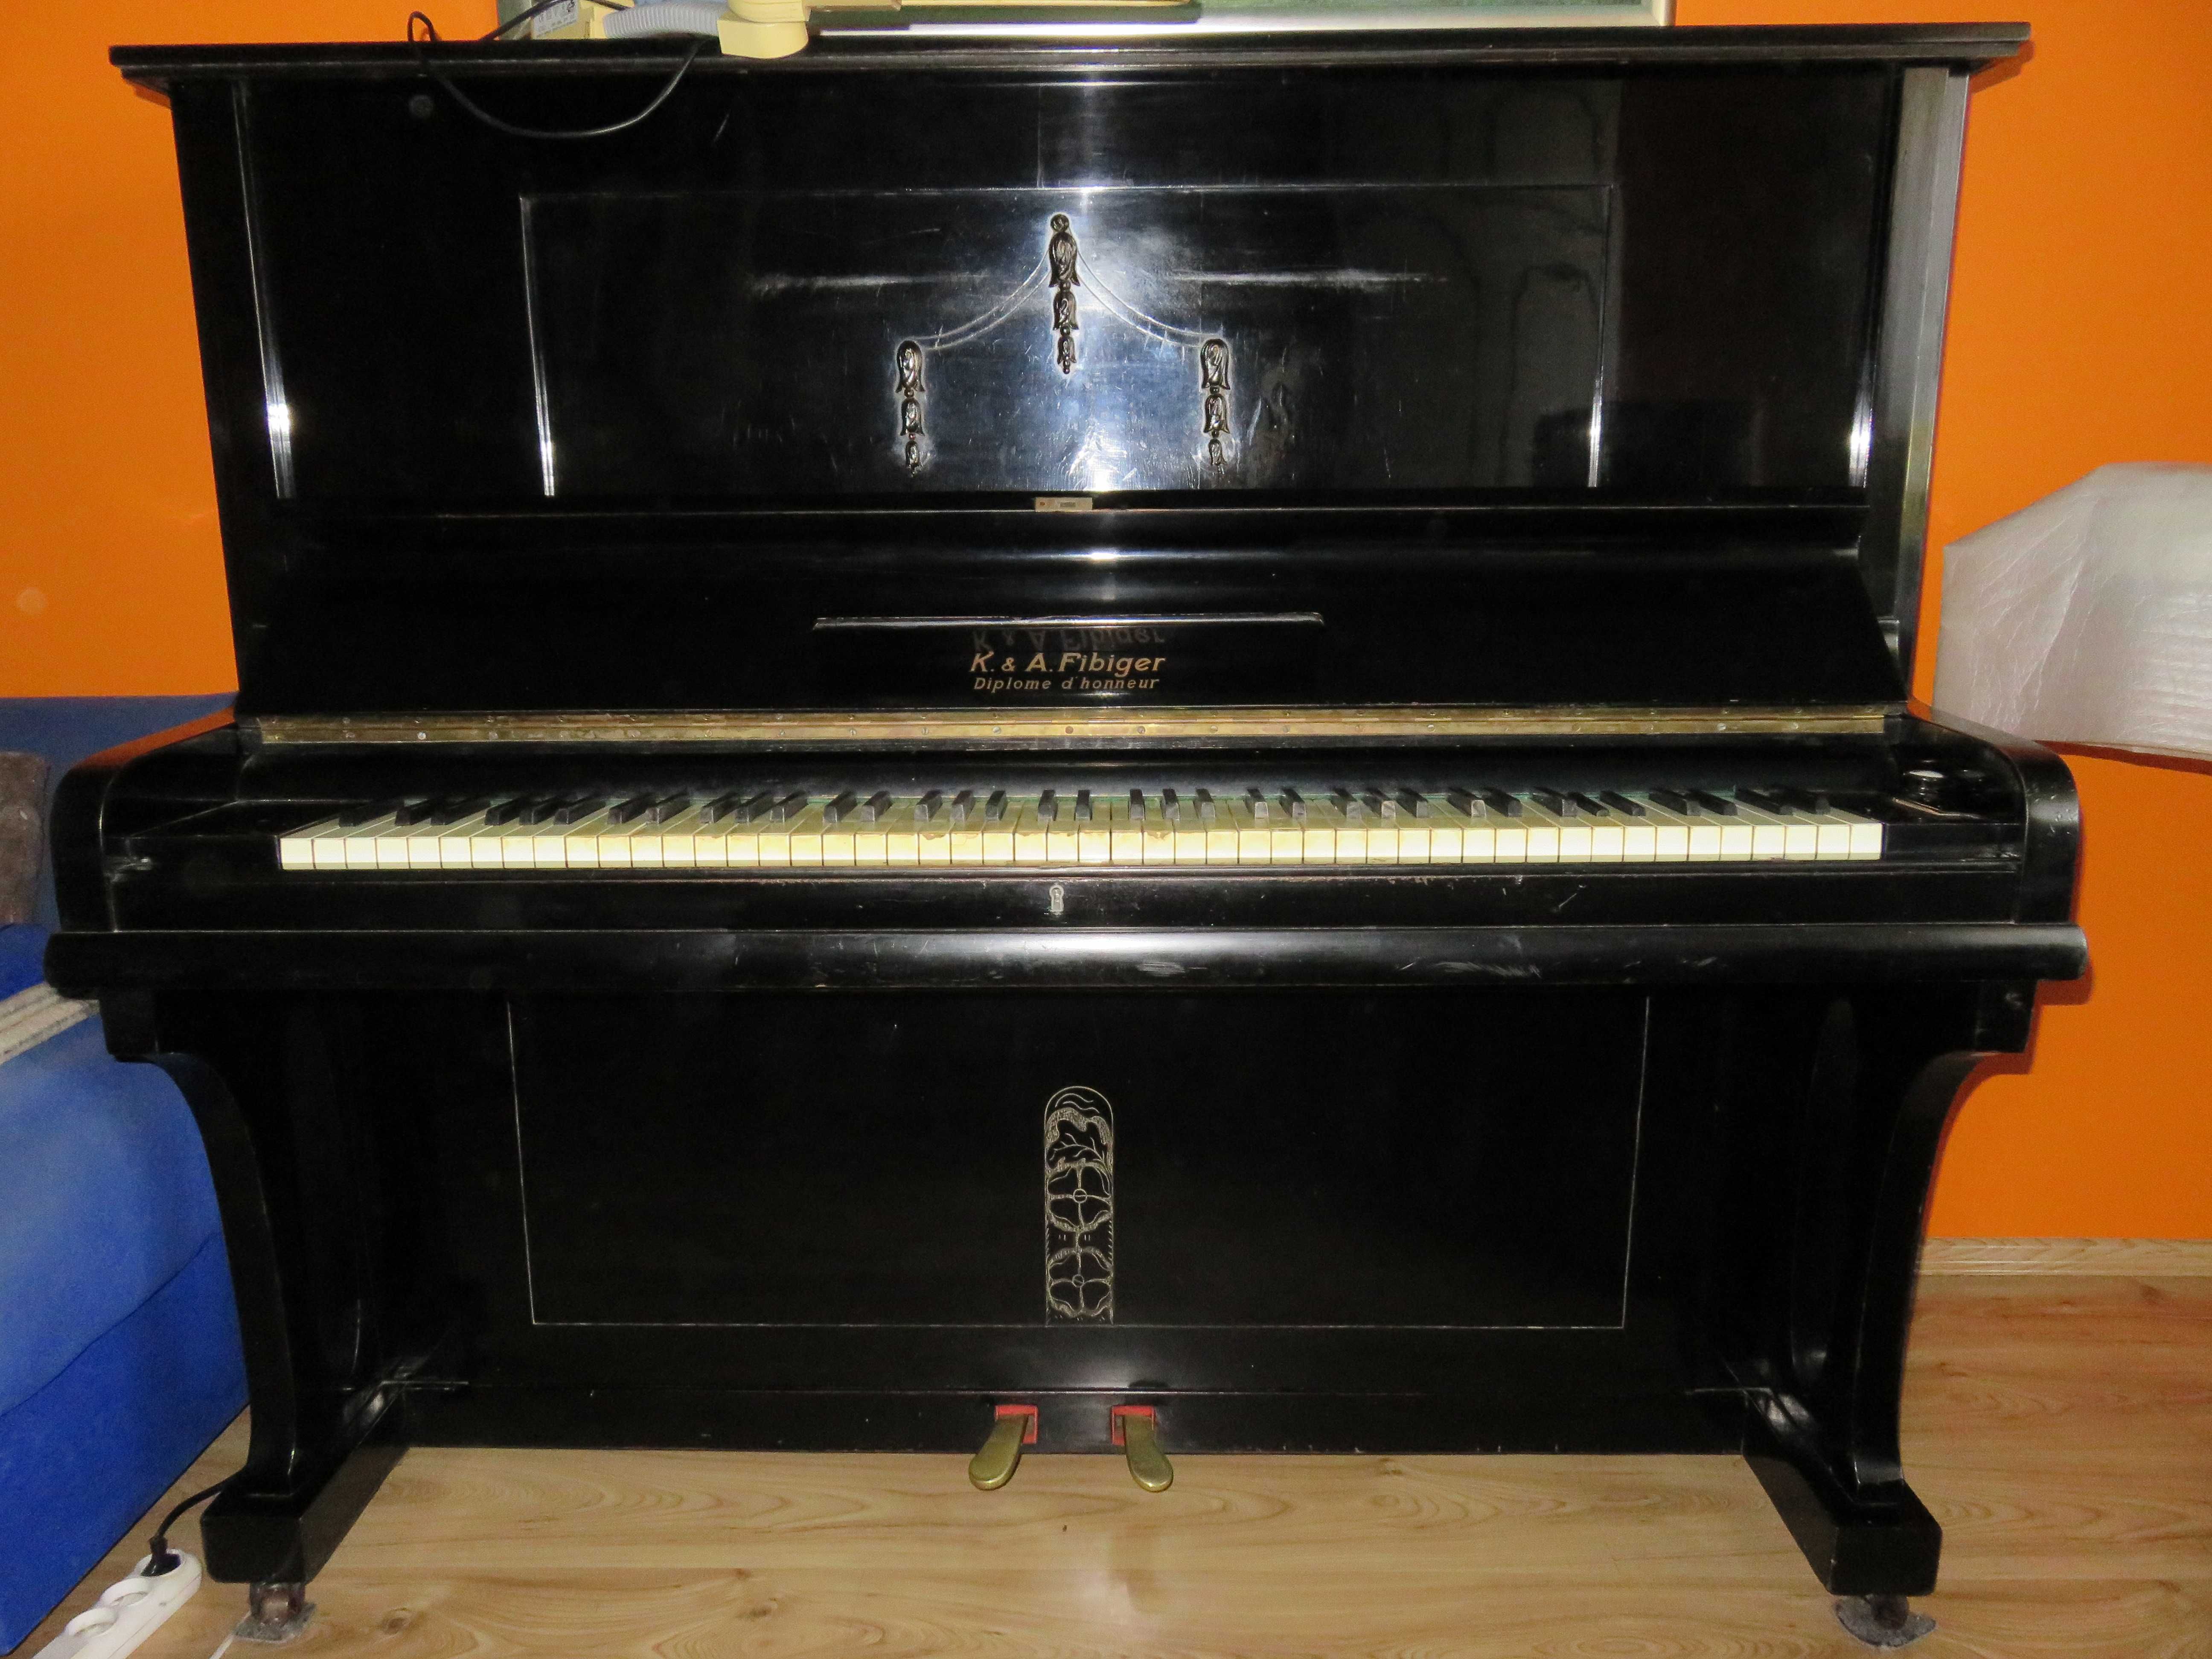 Sprzedam pianino FIBIGER w idealnym stanie (jak nowe)! Okazja cenowa!!